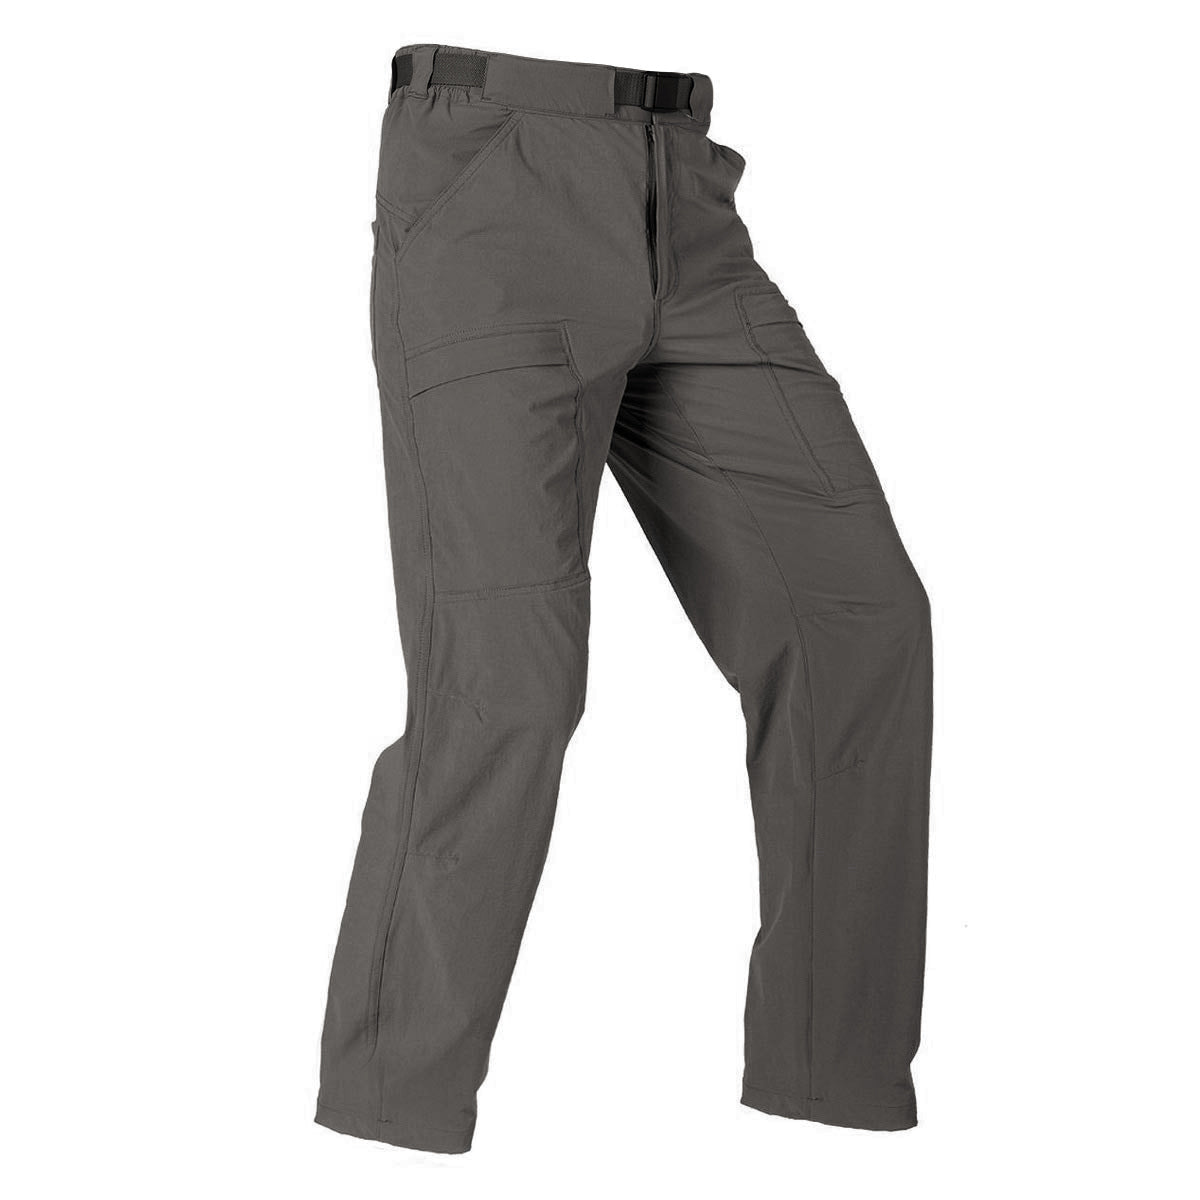 Tarmeek Men's Outdoor Cargo Pants Lightweight Waterproof Quick Dry Tactical Pants  Nylon Spandex Match Mens Wild Cargo Pants Sweatpants for Men 